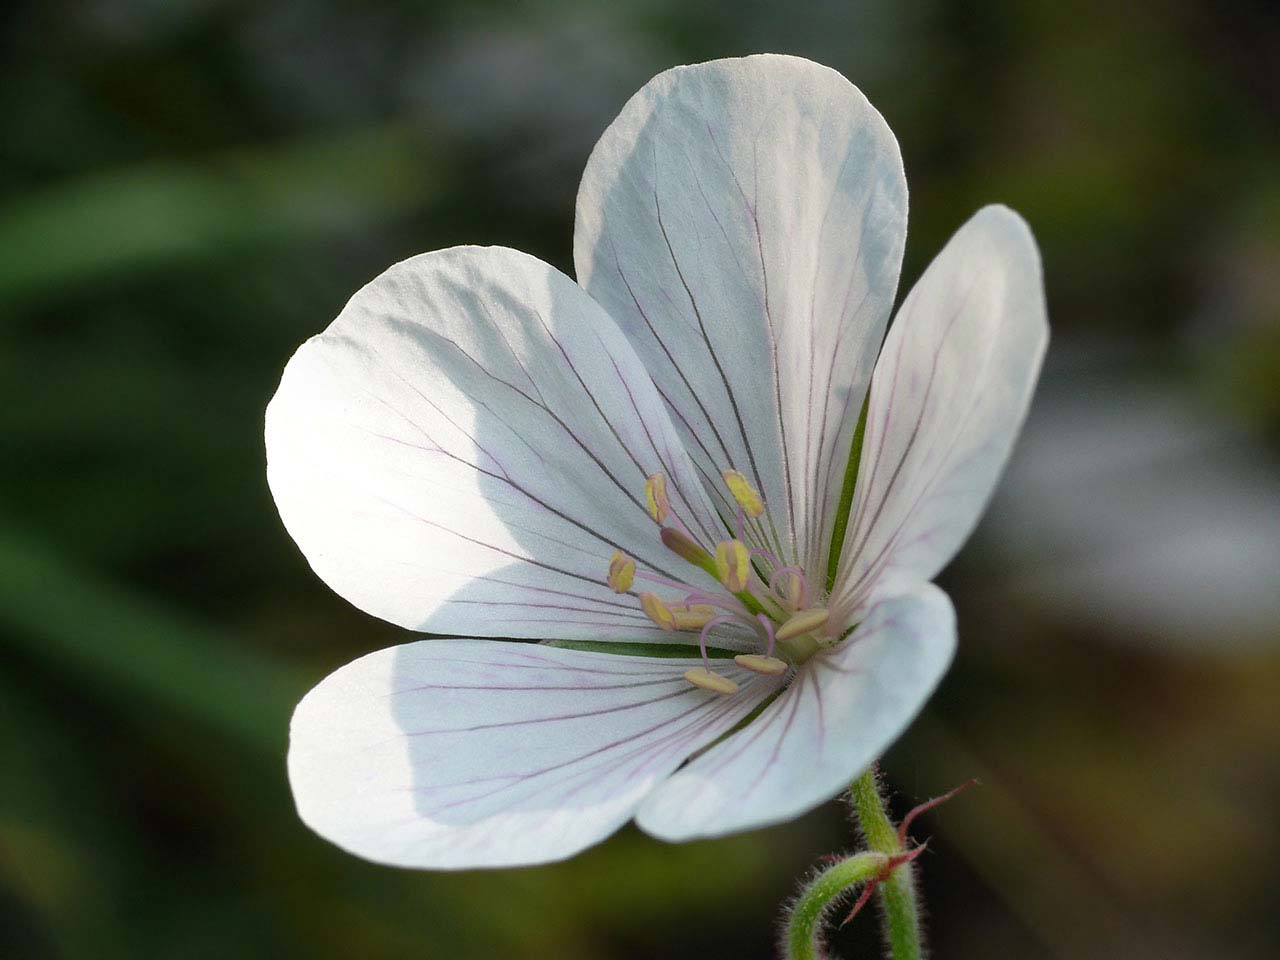 'Kasmir White' geranium flower